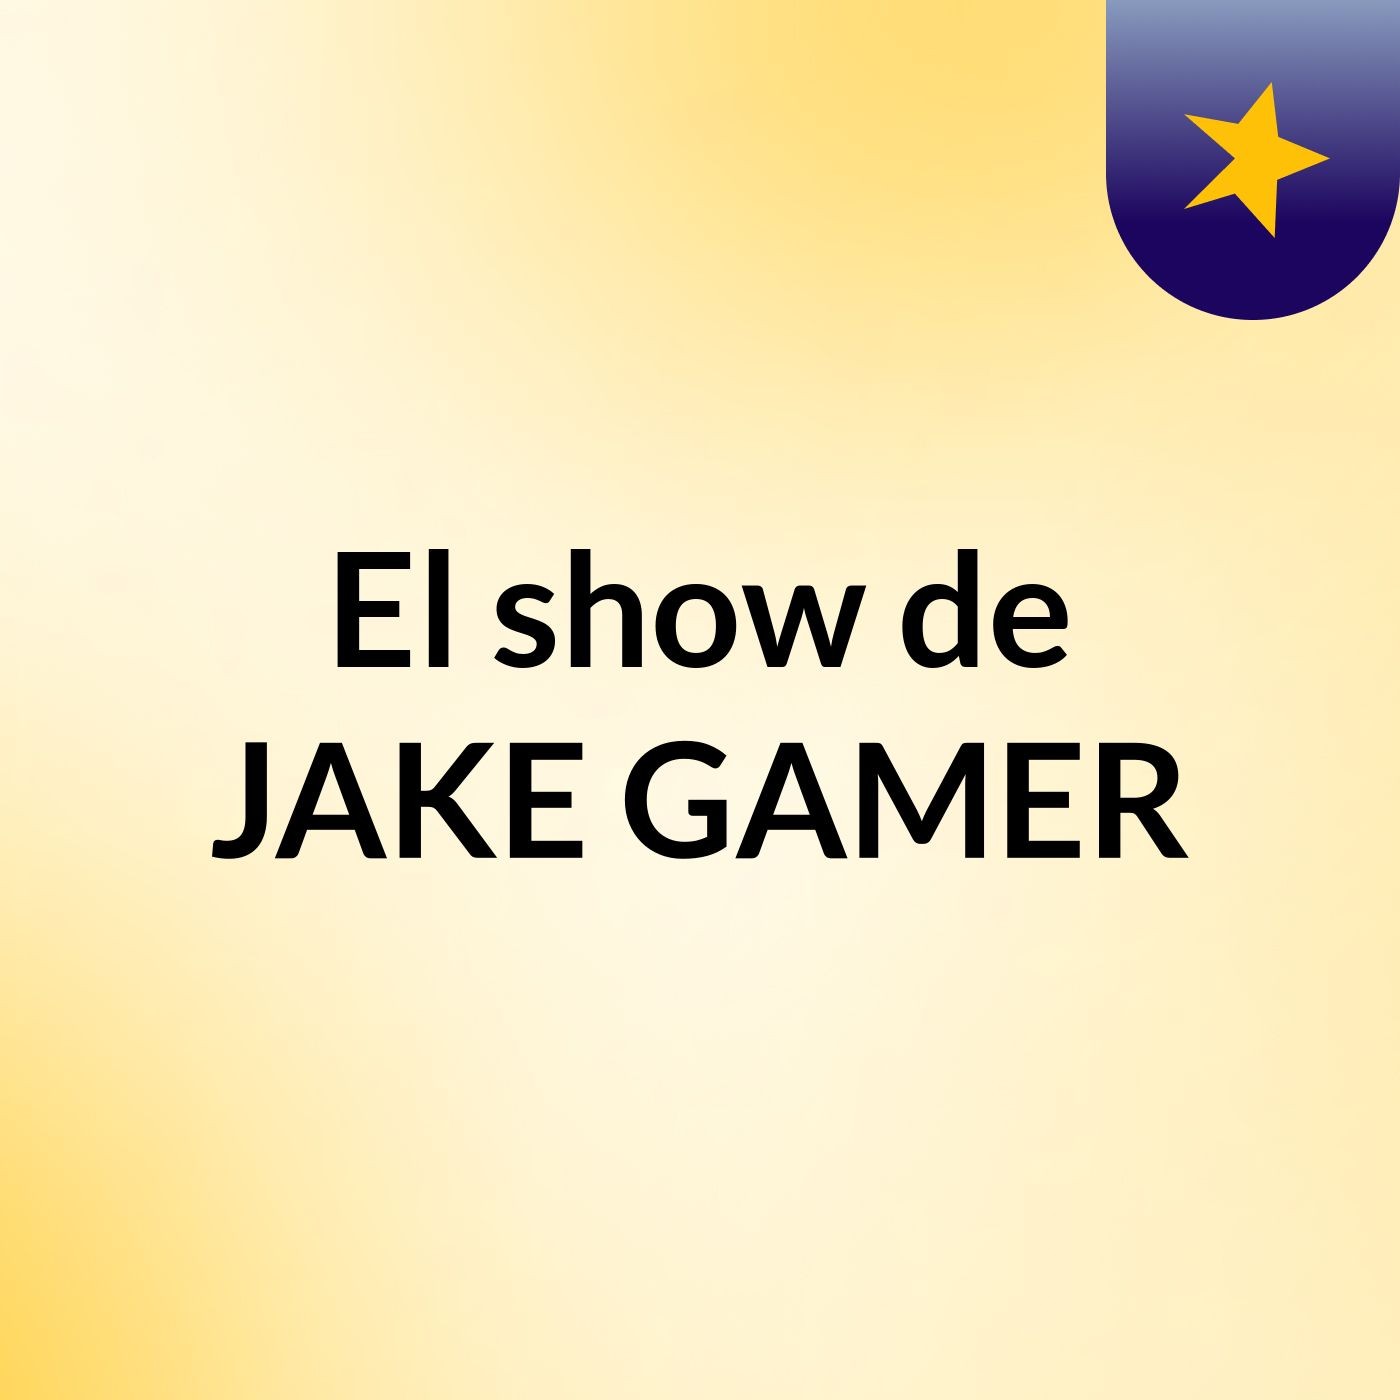 El show de JAKE GAMER